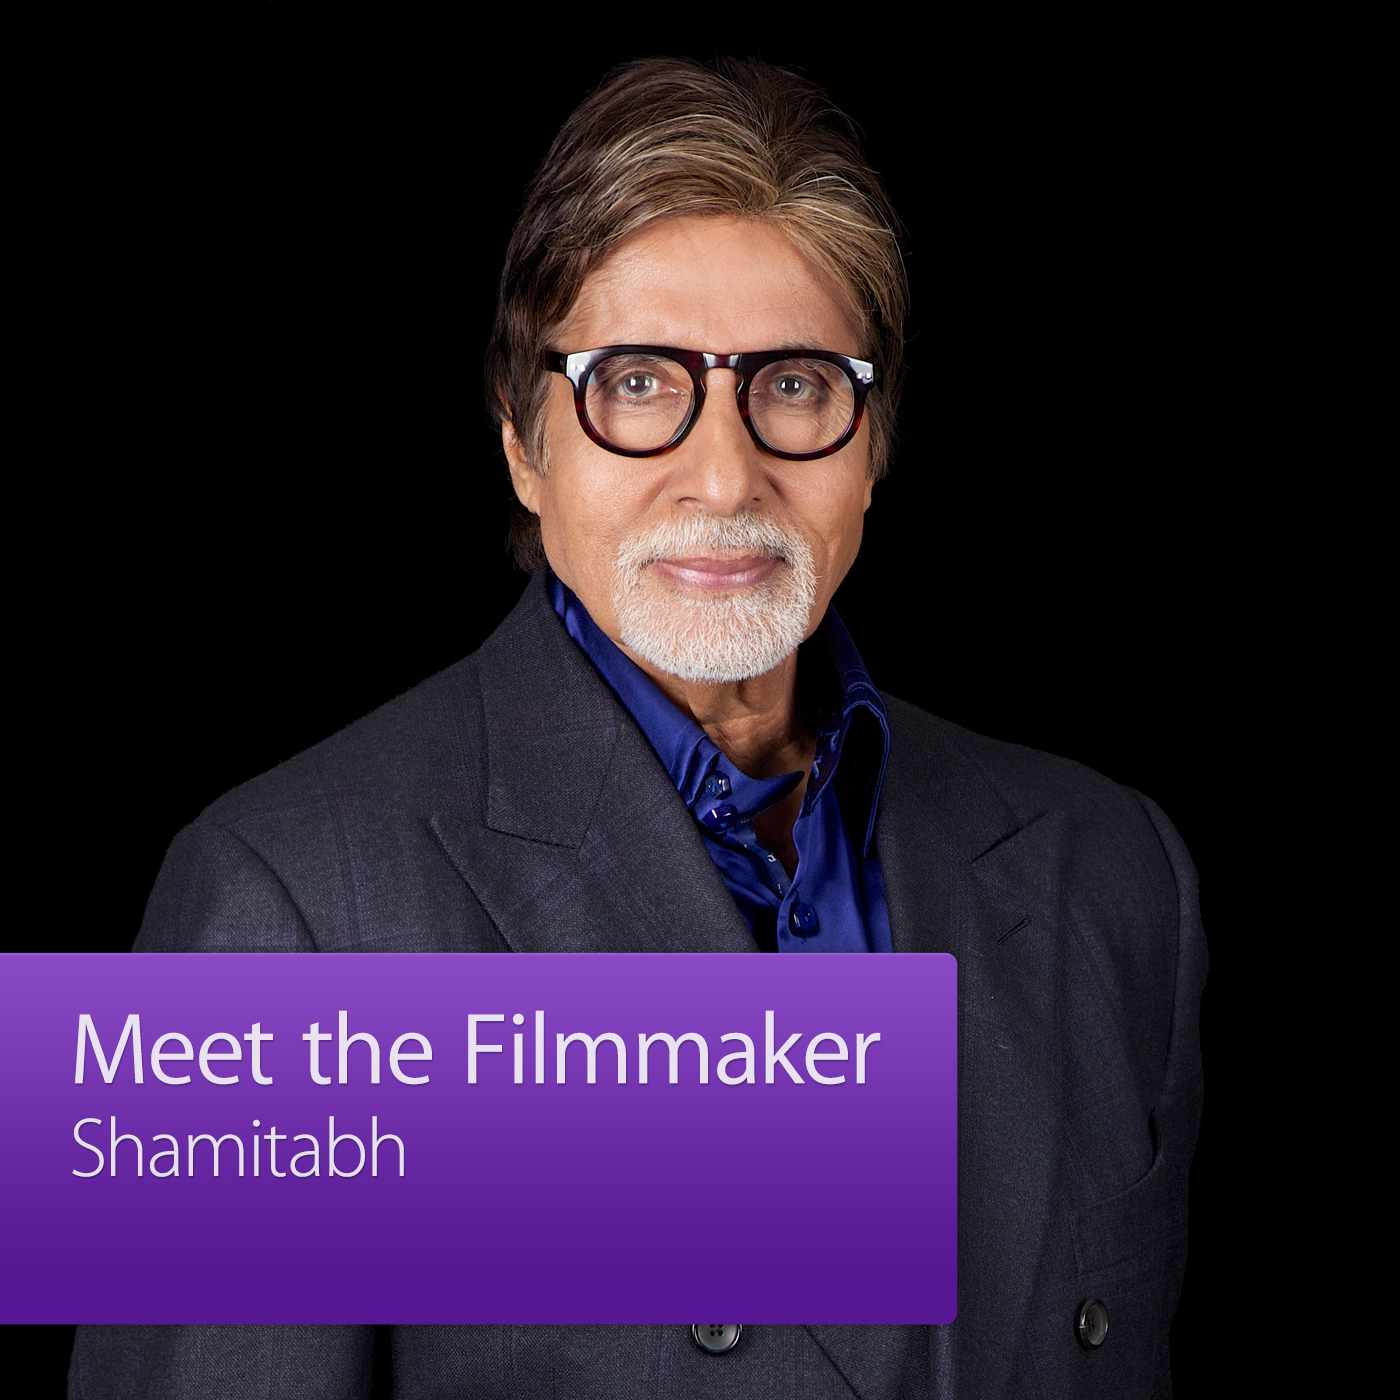 Shamitabh: Meet the Filmmaker